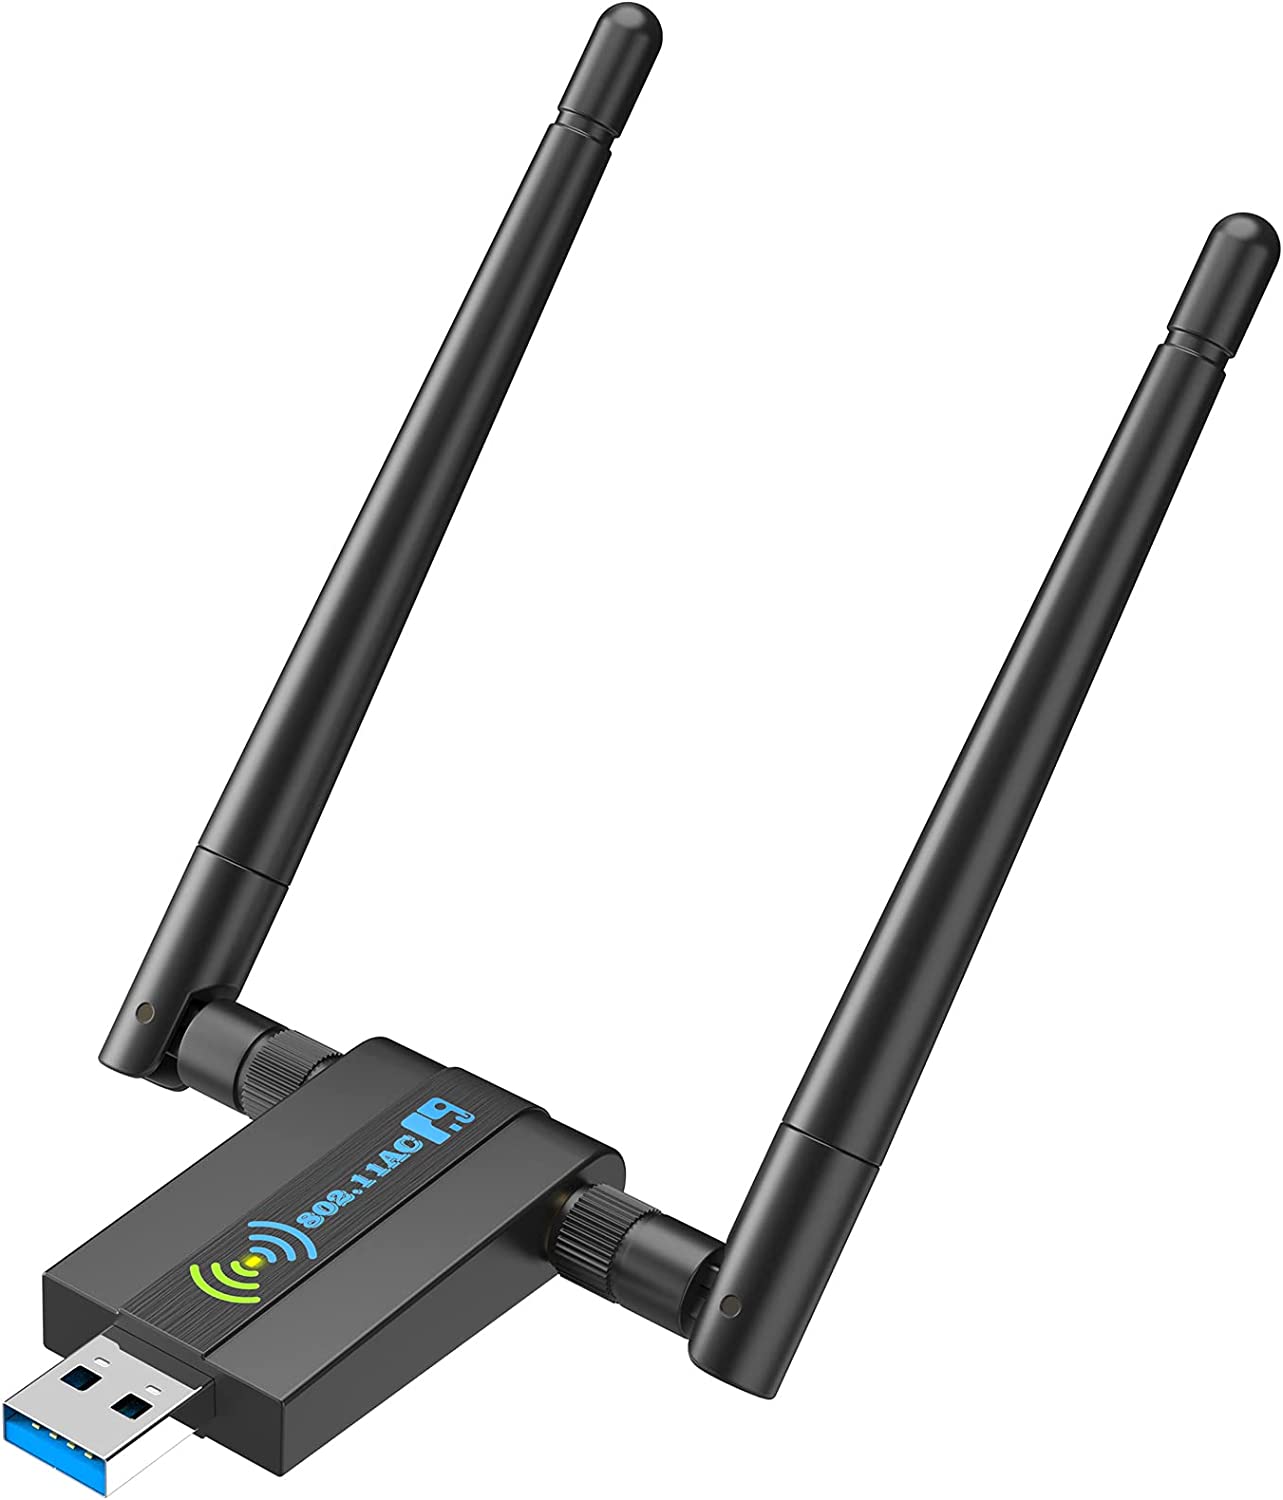 CXFTEOXK Interference-Free USB WiFi Adapter